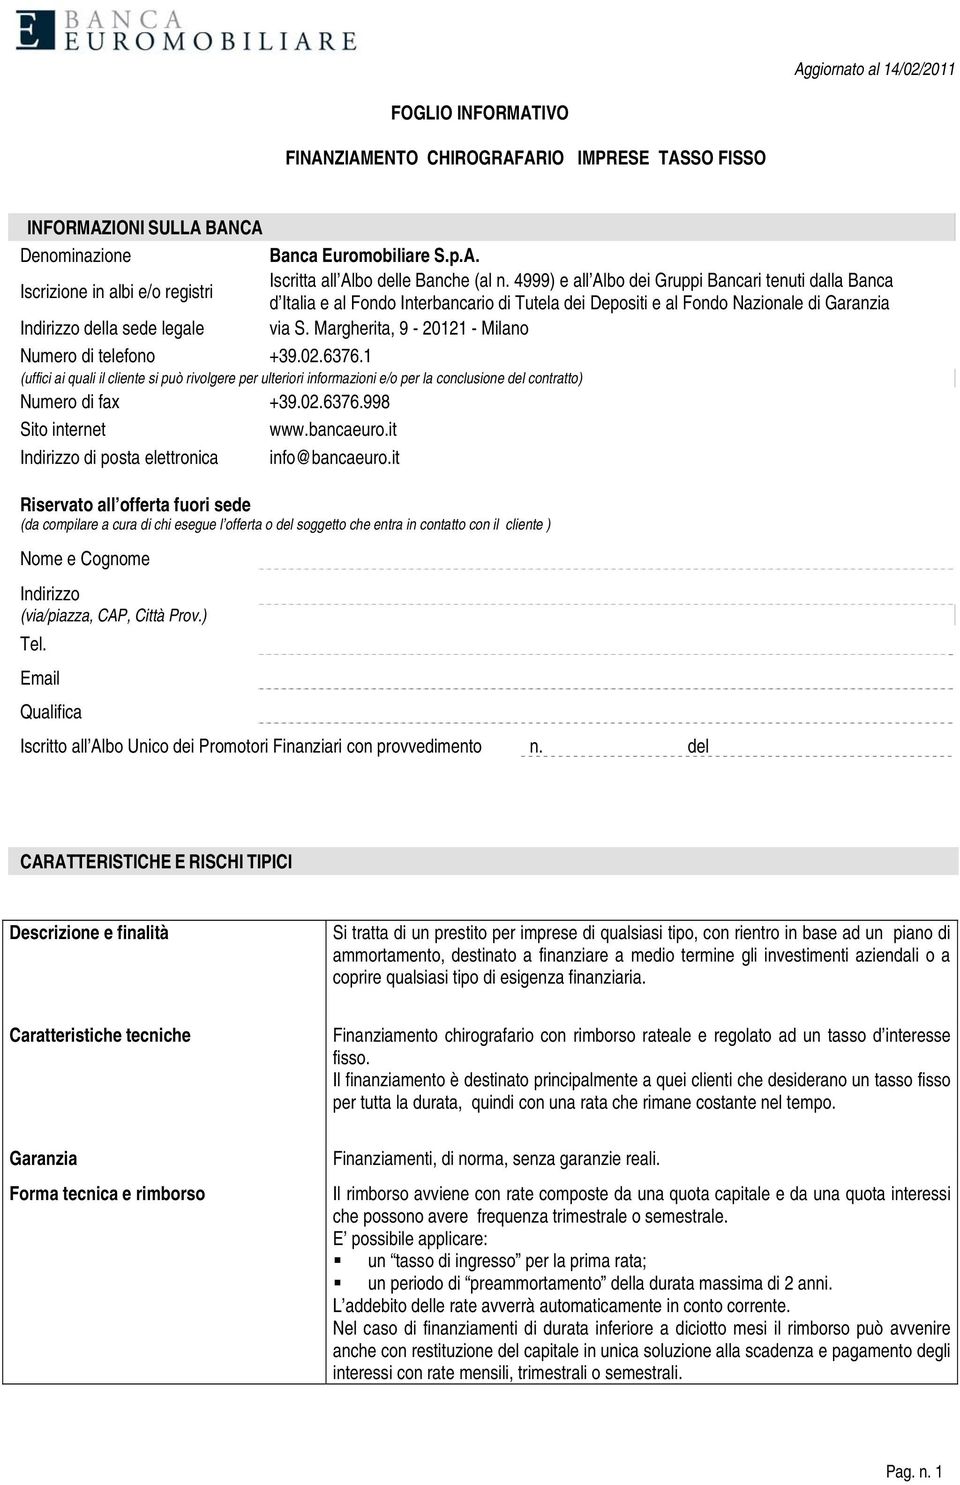 Margherita, 9-20121 - Milano Numero di telefono +39.02.6376.1 (uffici ai quali il cliente si può rivolgere per ulteriori informazioni e/o per la conclusione del contratto) Numero di fax +39.02.6376.998 Sito internet www.